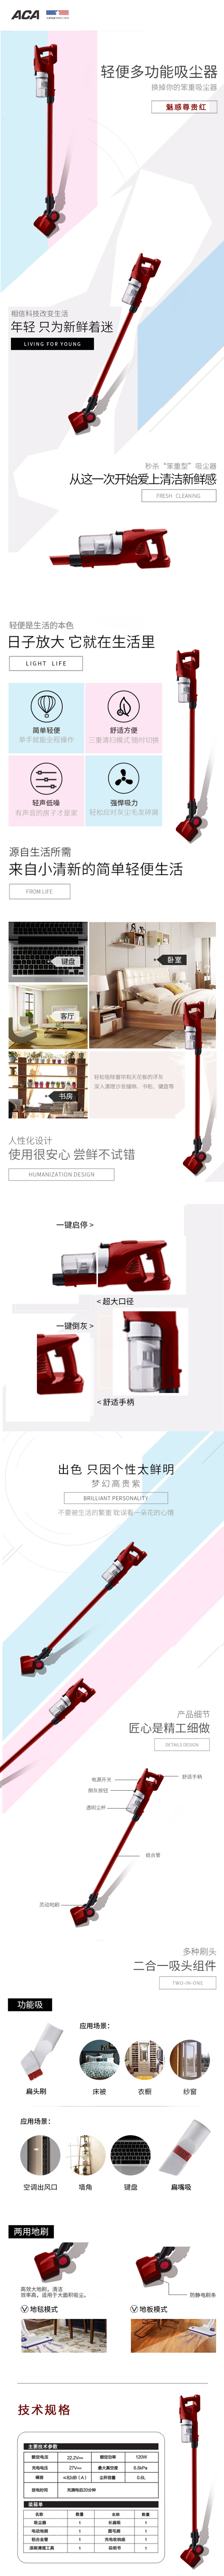 【北京馆】ACA真空吸尘器ALY-XC301S